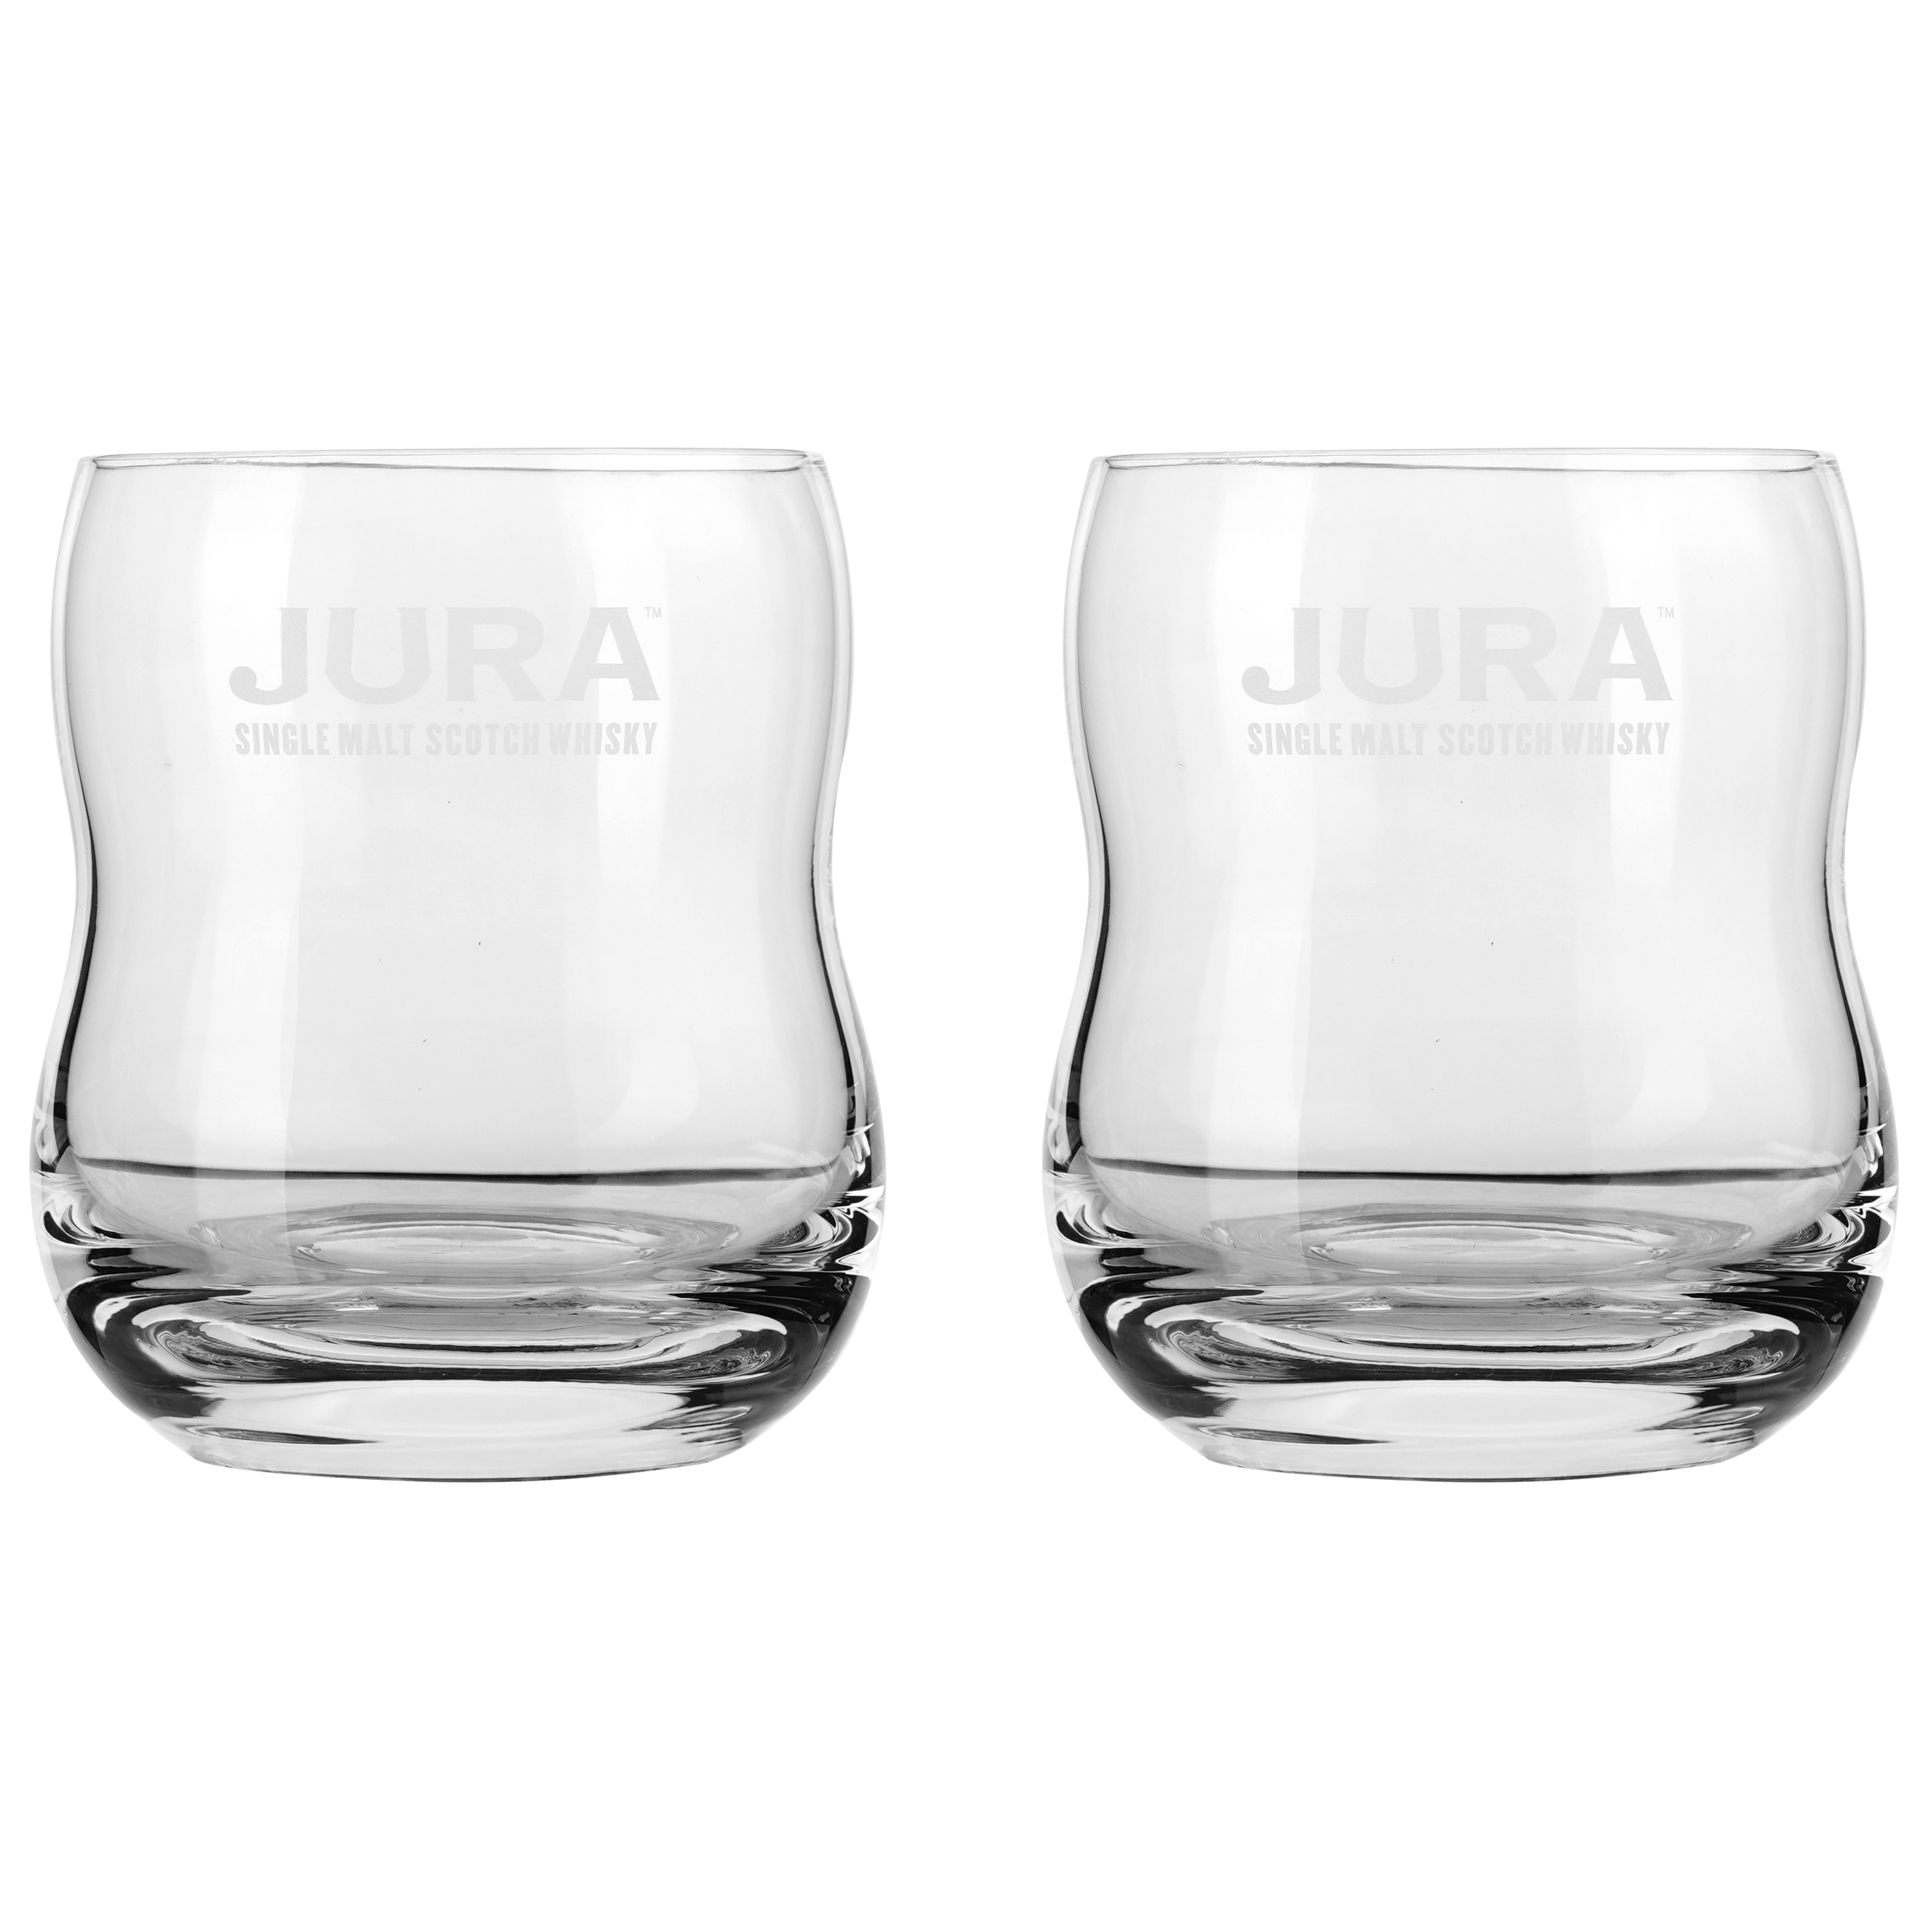 Виски Isle of Jura 10 yo Single Malt Scotch Whisky, 40 %, 0,7 л + 2 бокала (50186) - фото 4